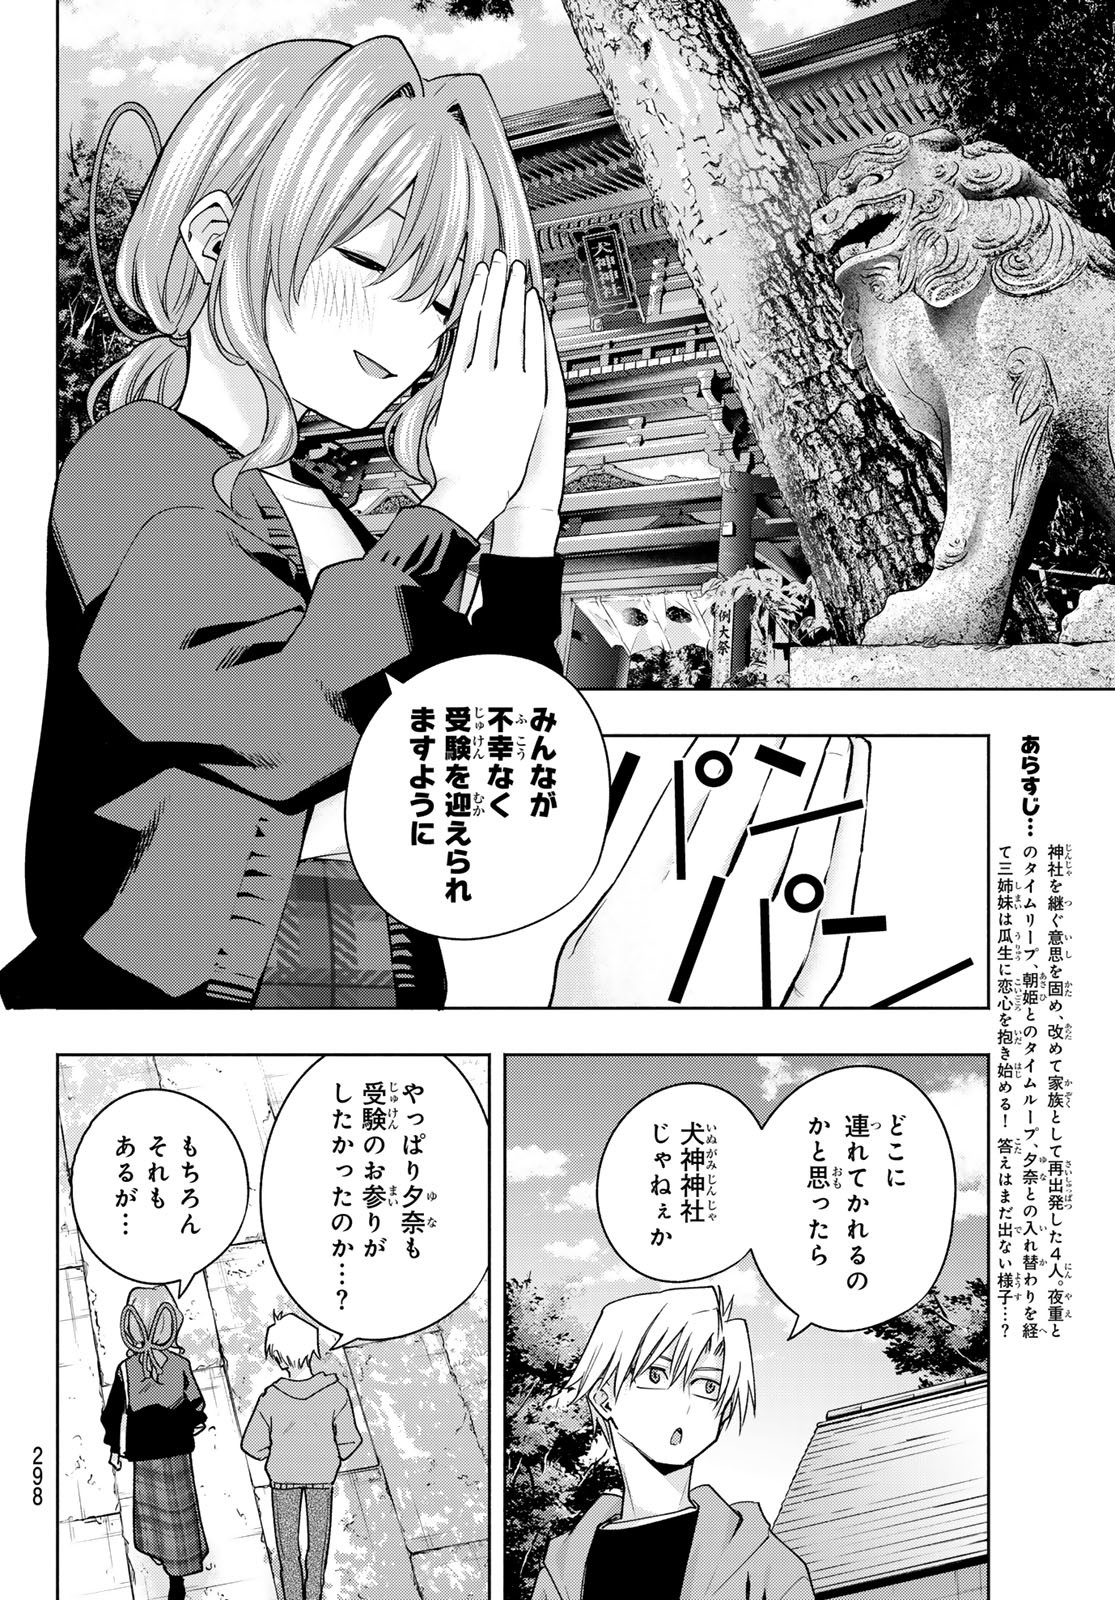 Amagami-san Chi no Enmusubi - Chapter 121 - Page 2